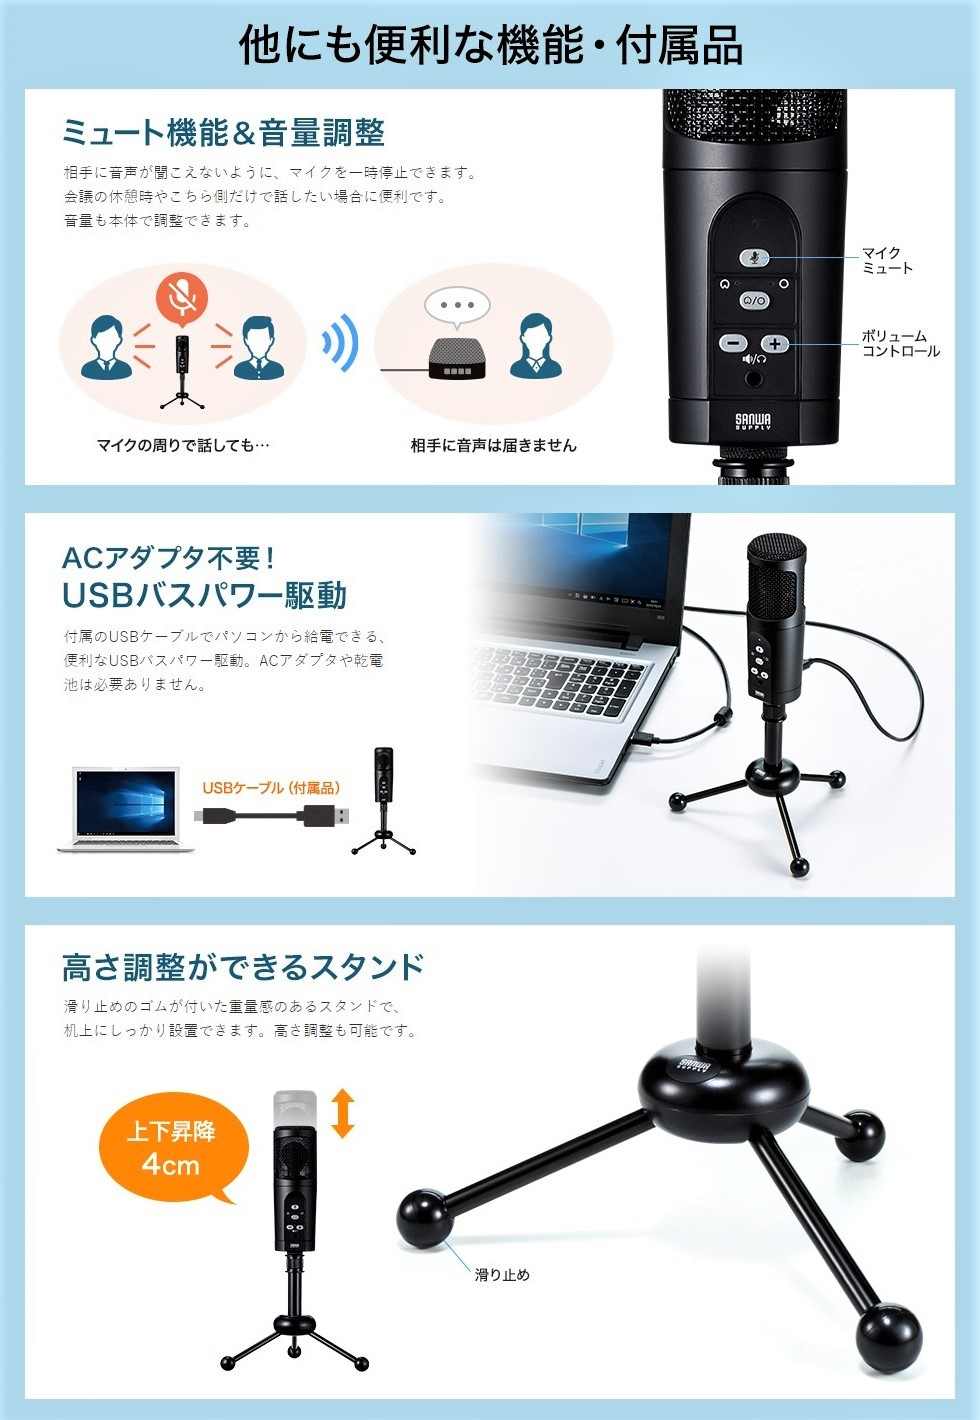 MM-MCU05BK マイク [USB] サンワサプライ｜SANWA SUPPLY 通販 | ビックカメラ.com